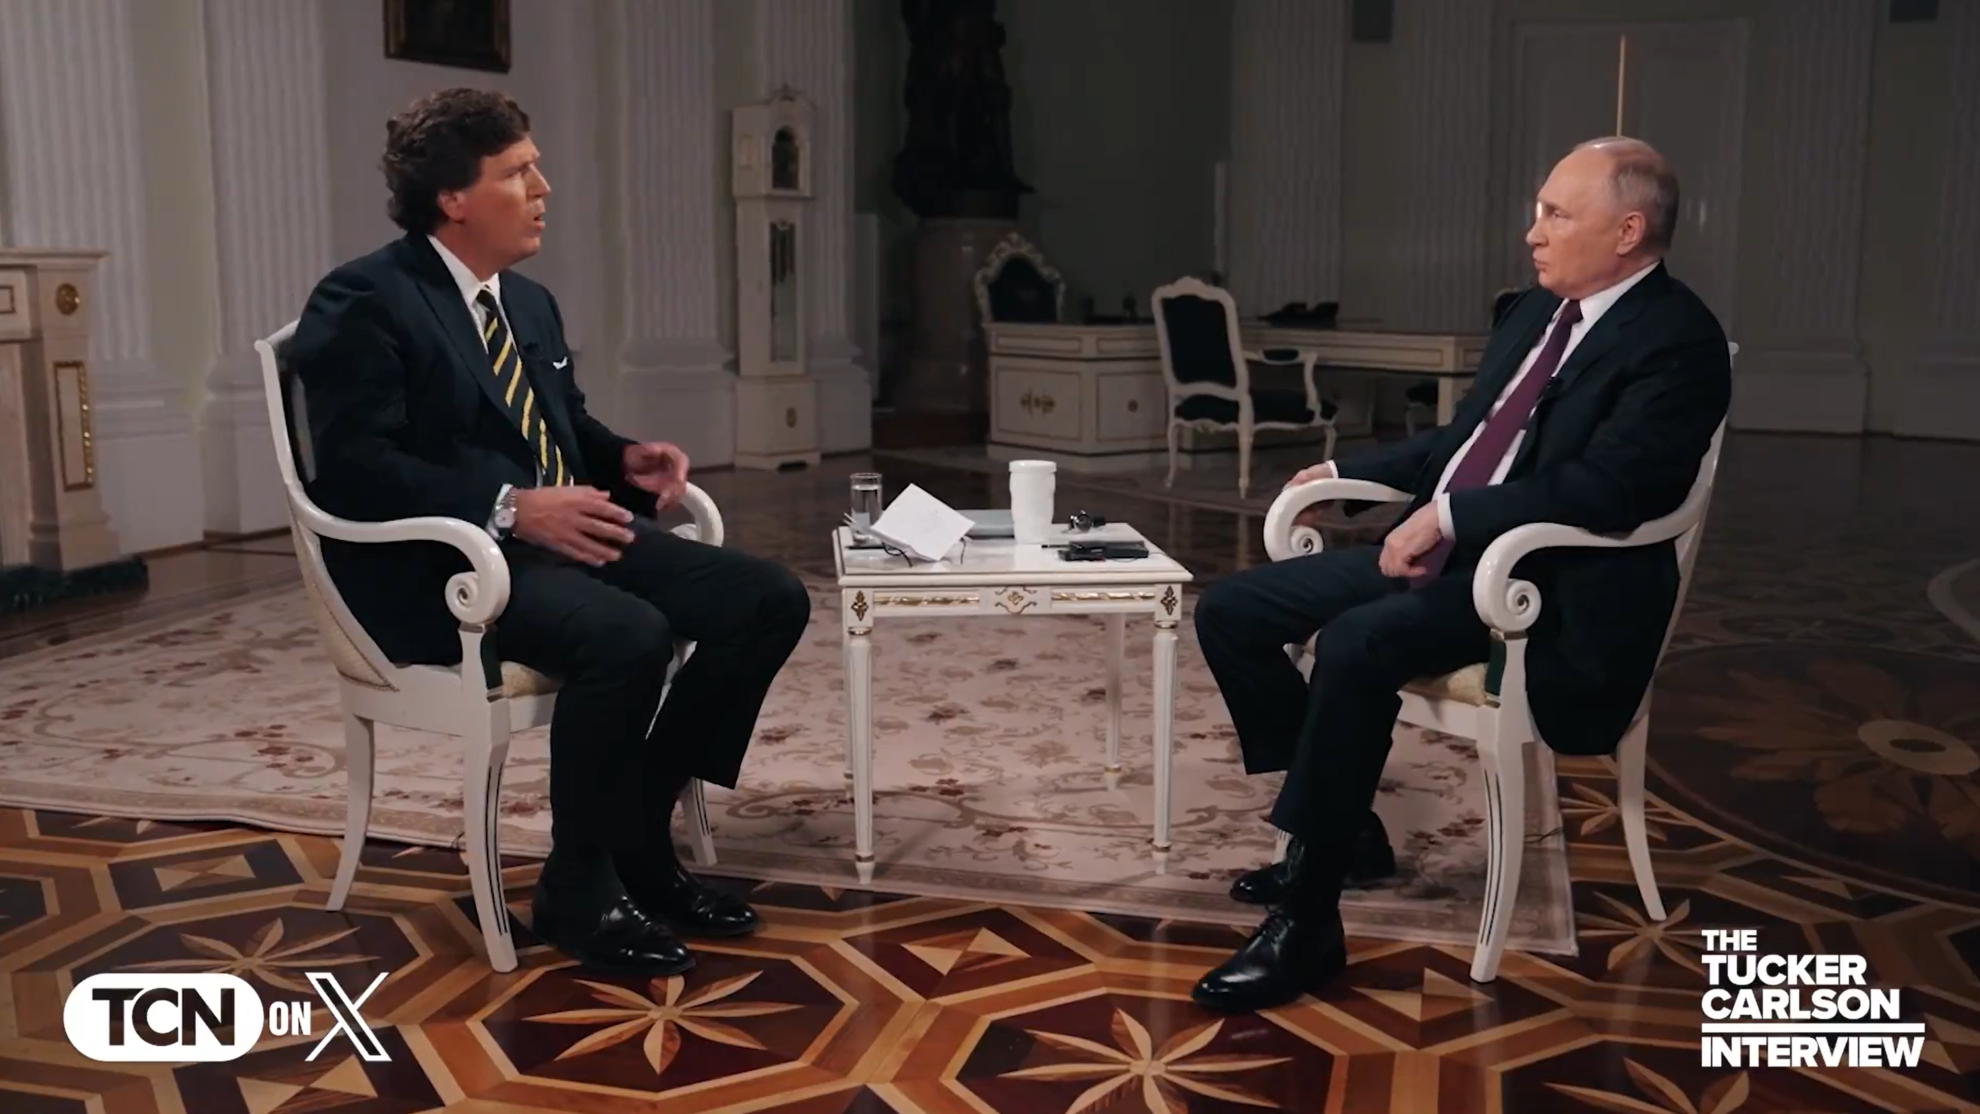 Interviu cu Vladimir Putin: “Imposibil să fim învinși, suntem deschiși la dialog”